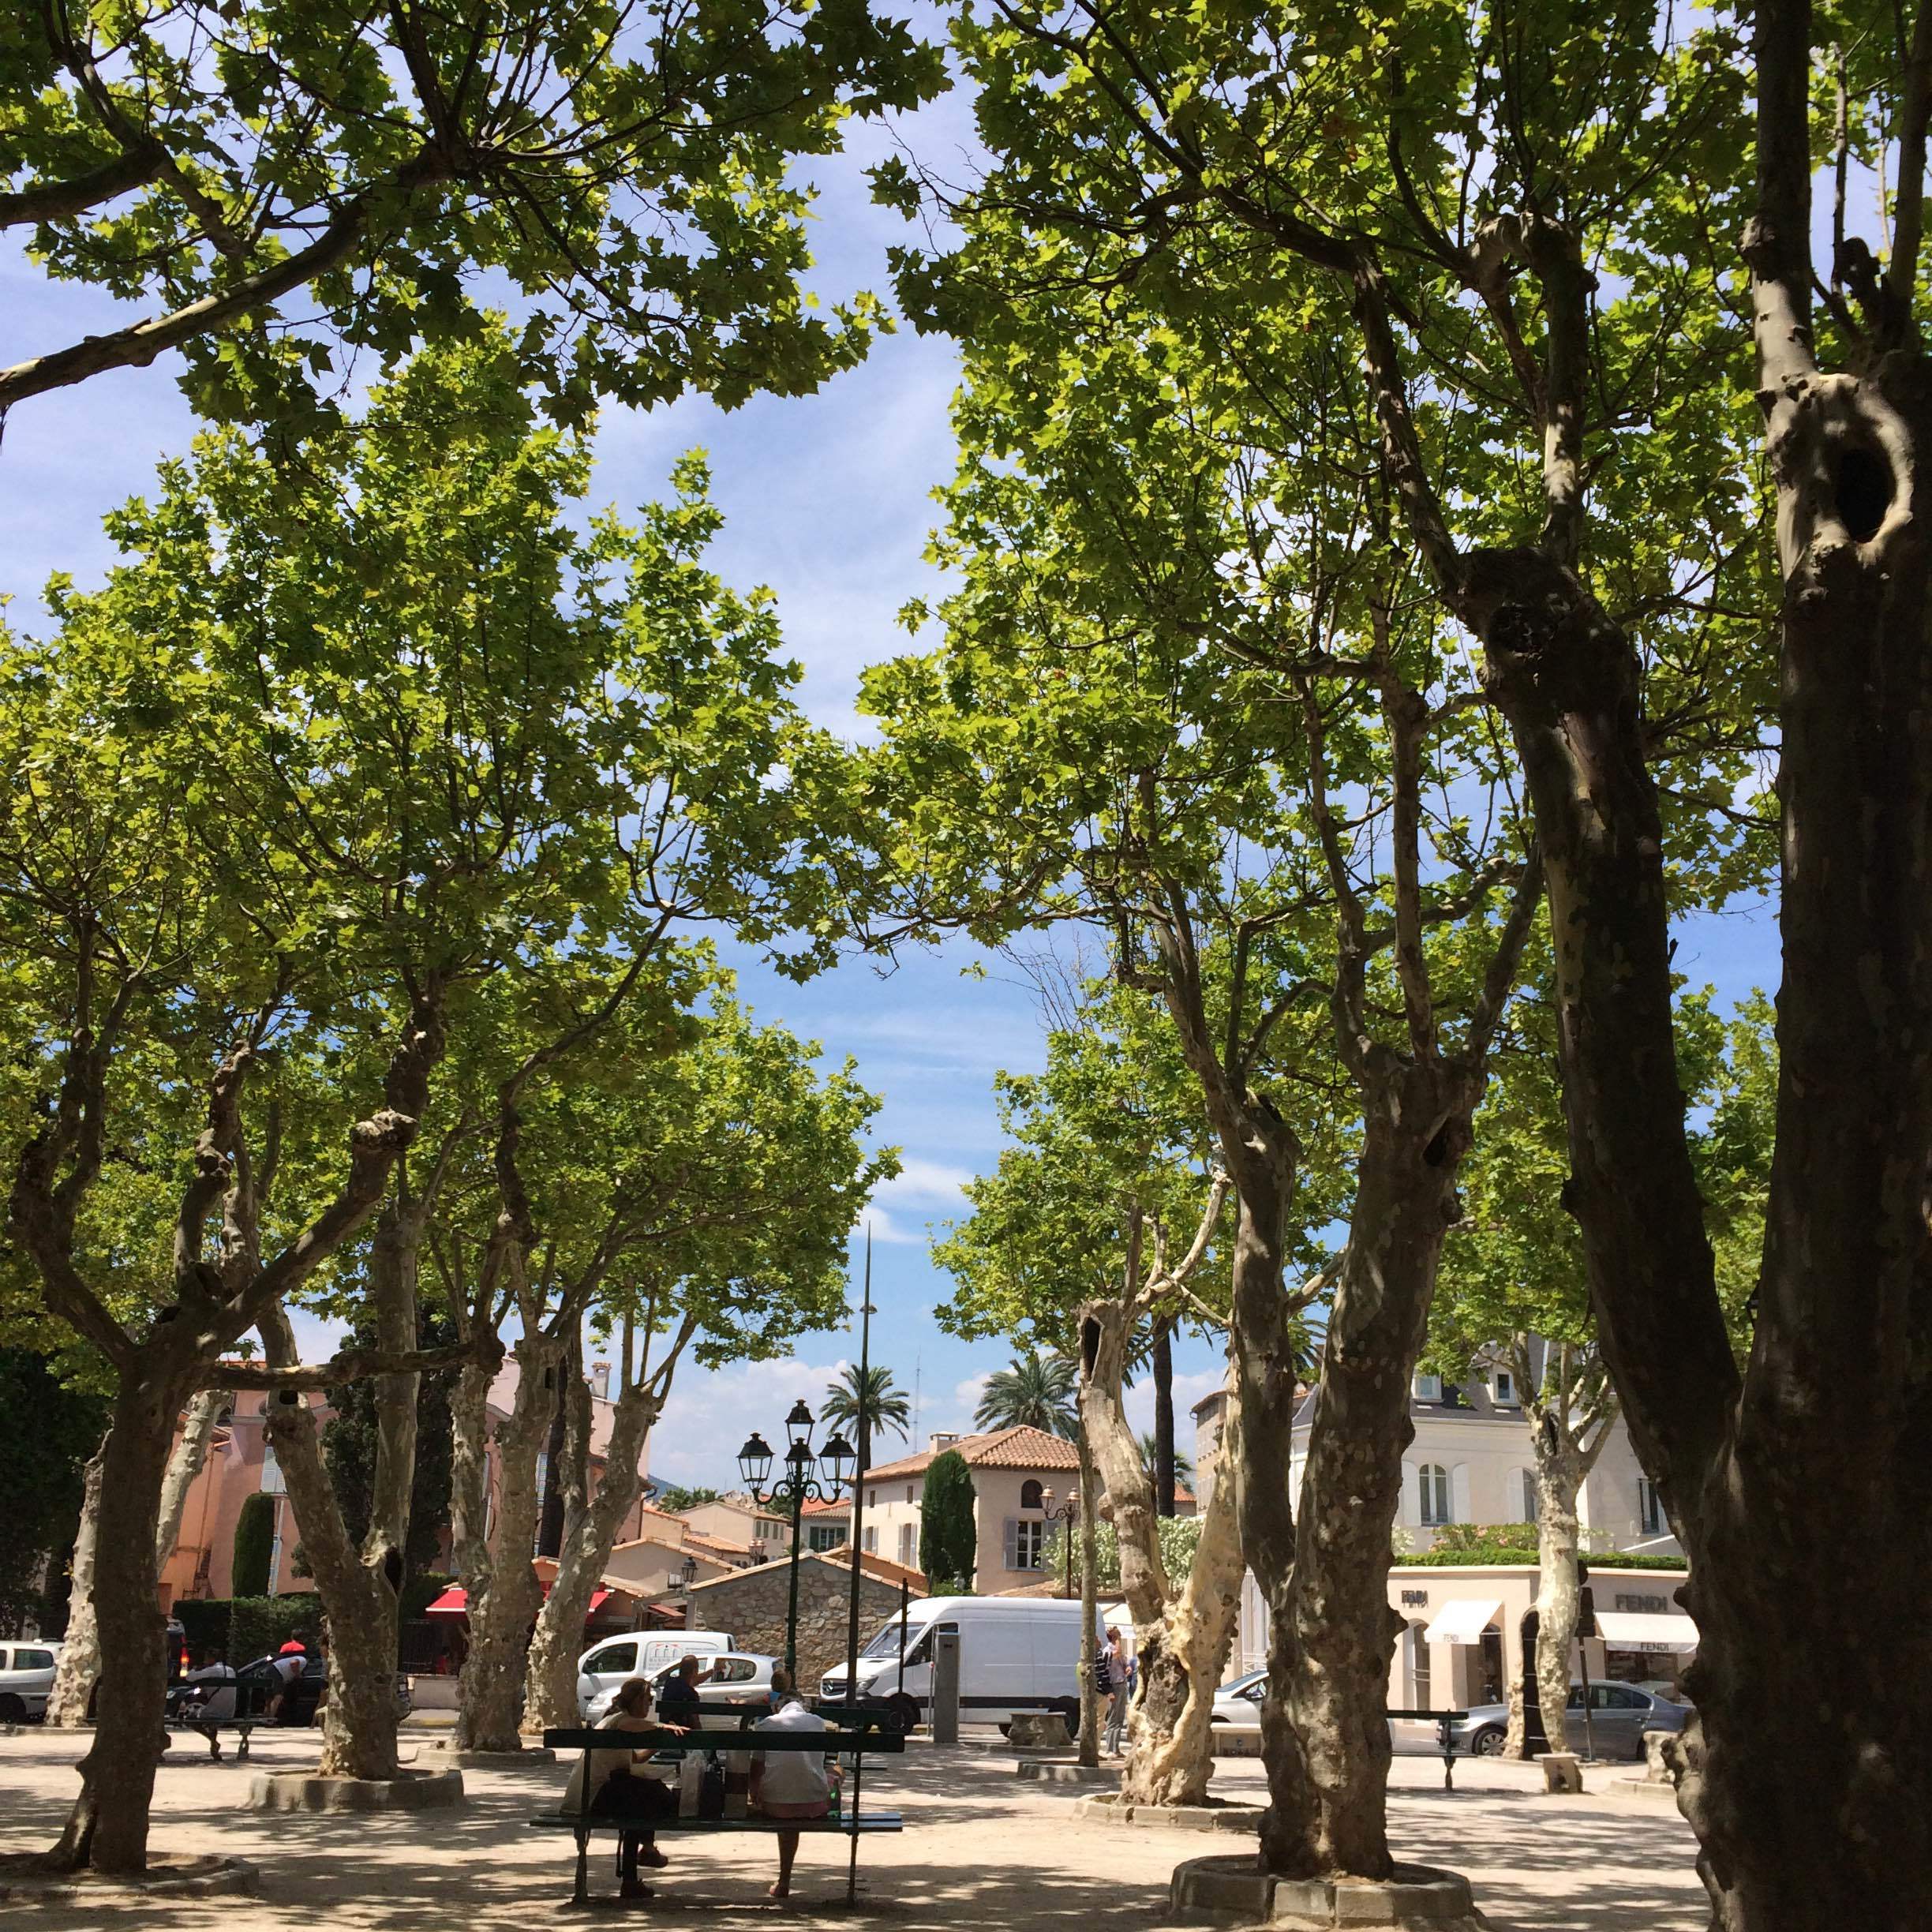 Place des Lices - St. Tropez - Côte d'Azur - South of France (French Riviera)